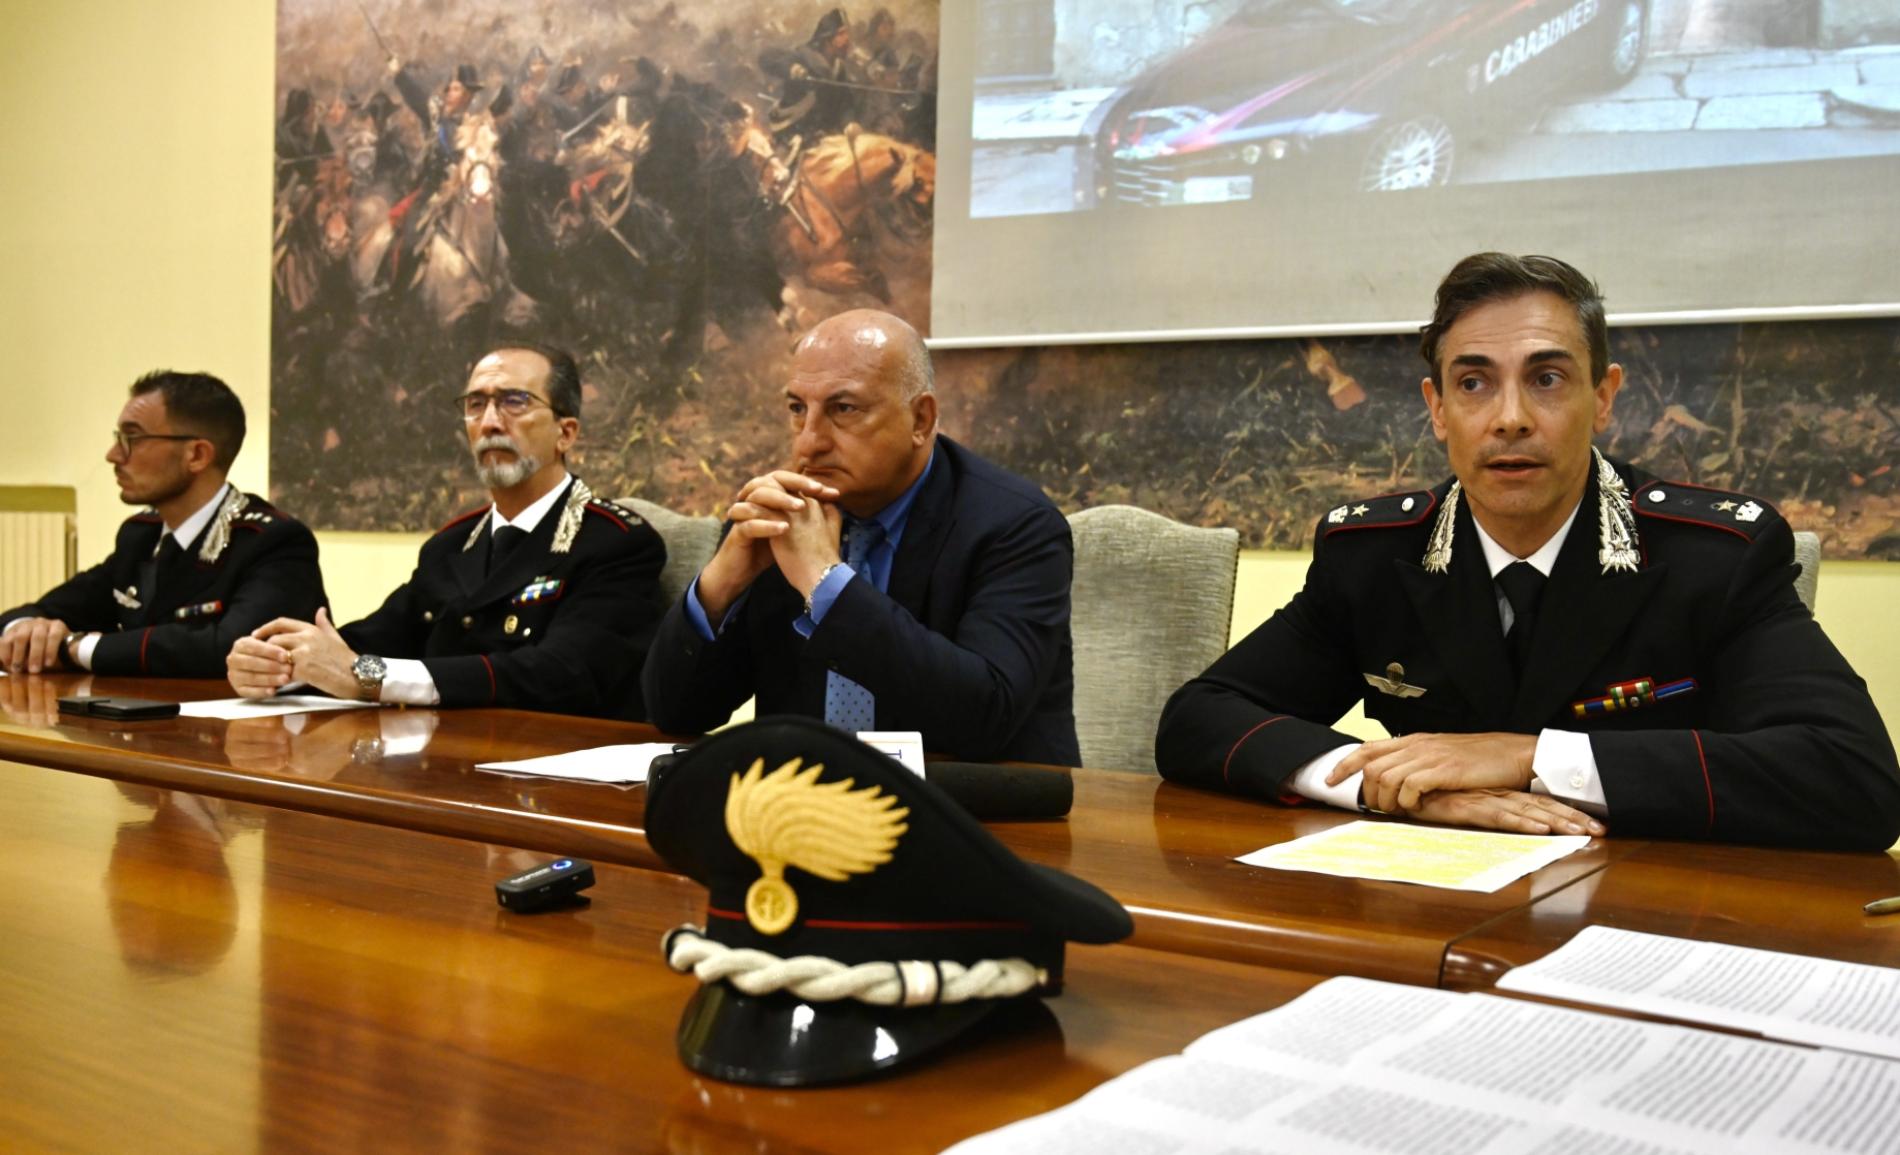 «La confessione di Luca estorta con le minacce»: ora gli Orlandi sono accusati di calunnia nei confronti dei Carabinieri